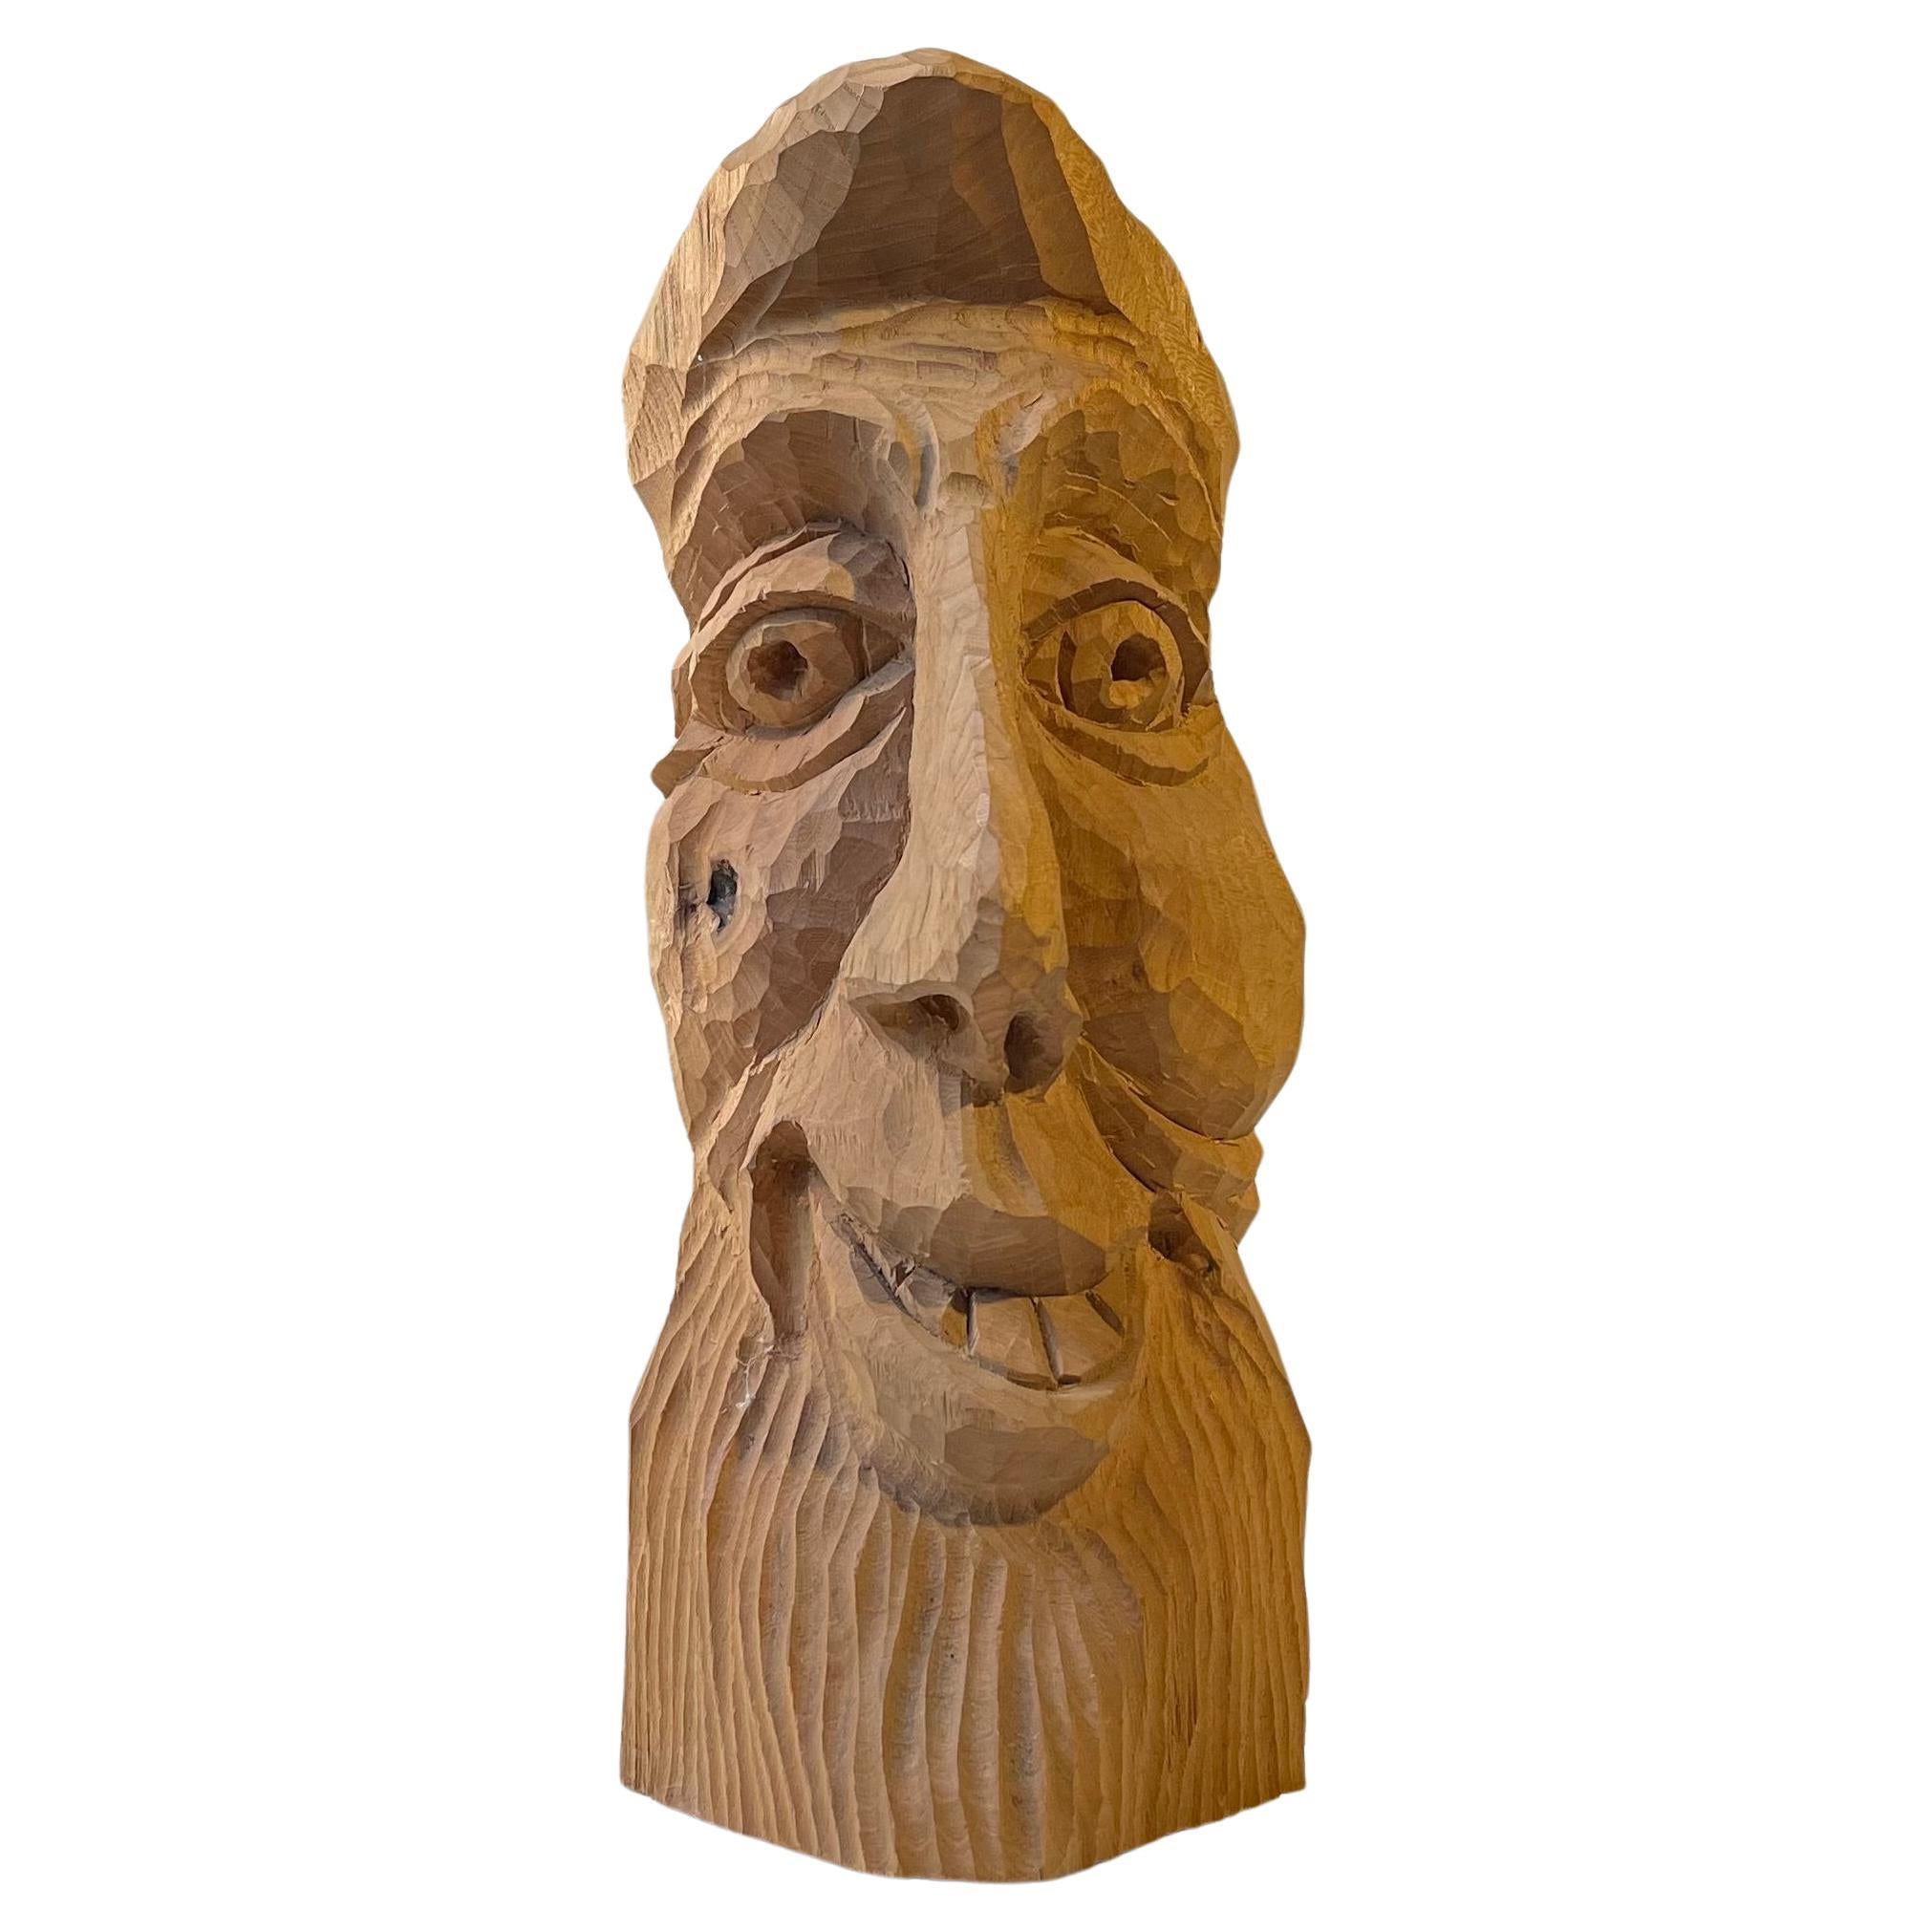 Gaius Julius Caesar - Caricature Head in Hand-Carved Oak, 1970s